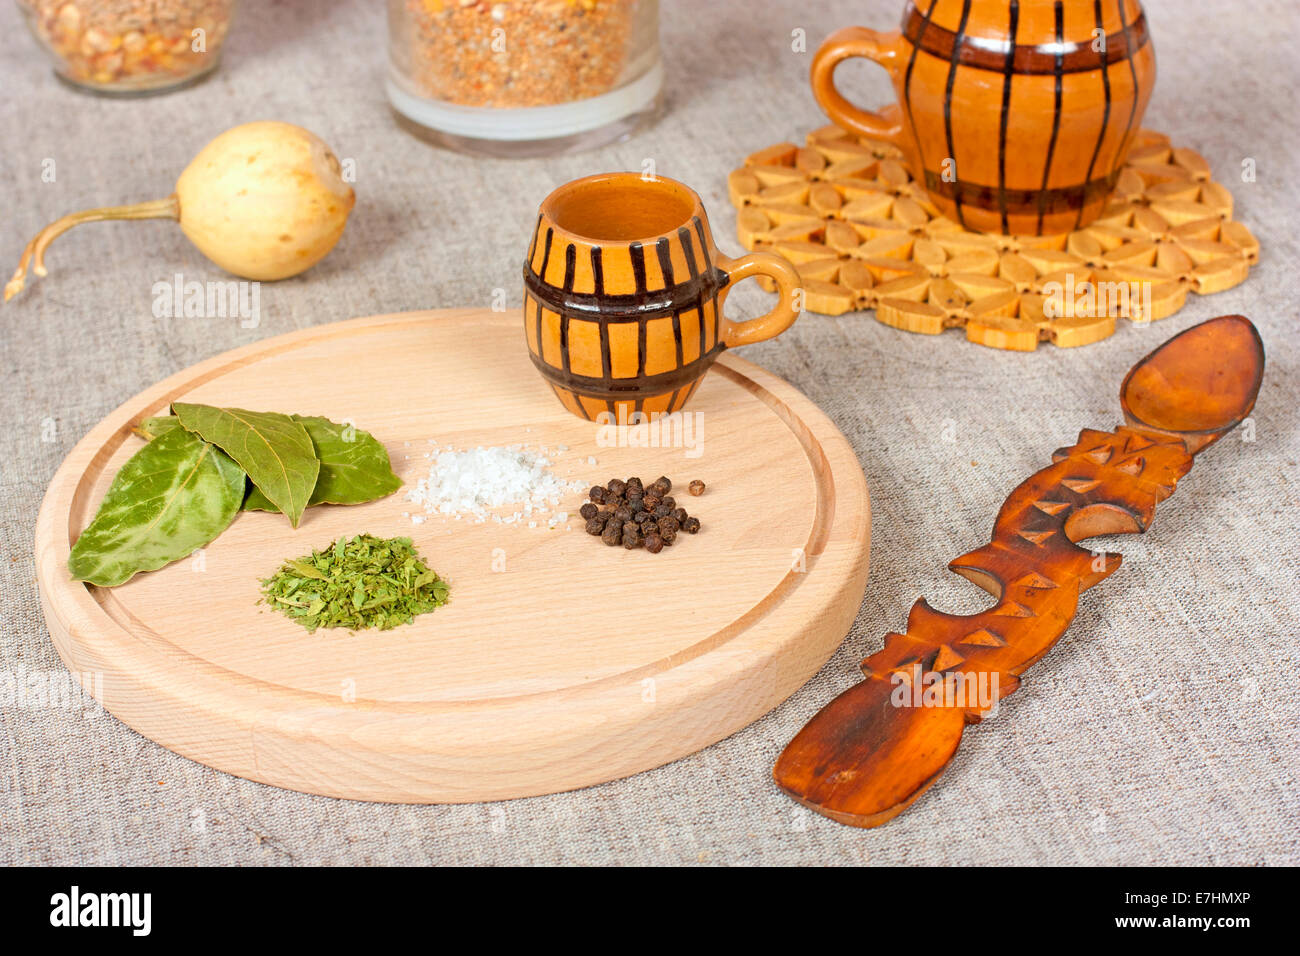 Verschiedene Zutaten wie Bay, Salz und Pfeffer auf einem Holzteller Stockfoto